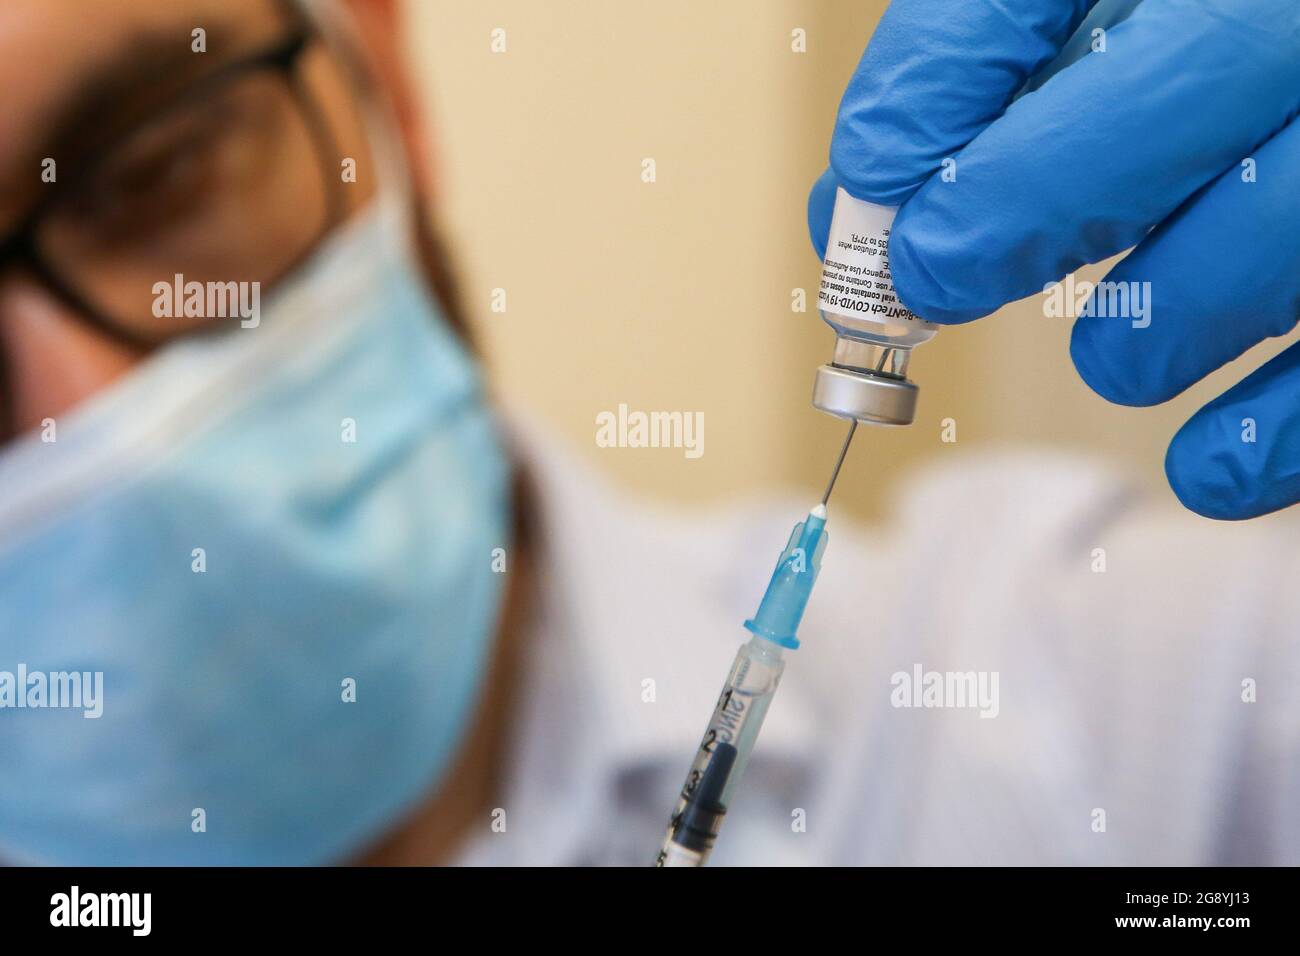 El trabajador de salud del NHS se prepara para administrar la vacuna Pfizer/ BioNTec Covid-19 a un miembro del público en un centro de vacunación en Londres. Foto de stock